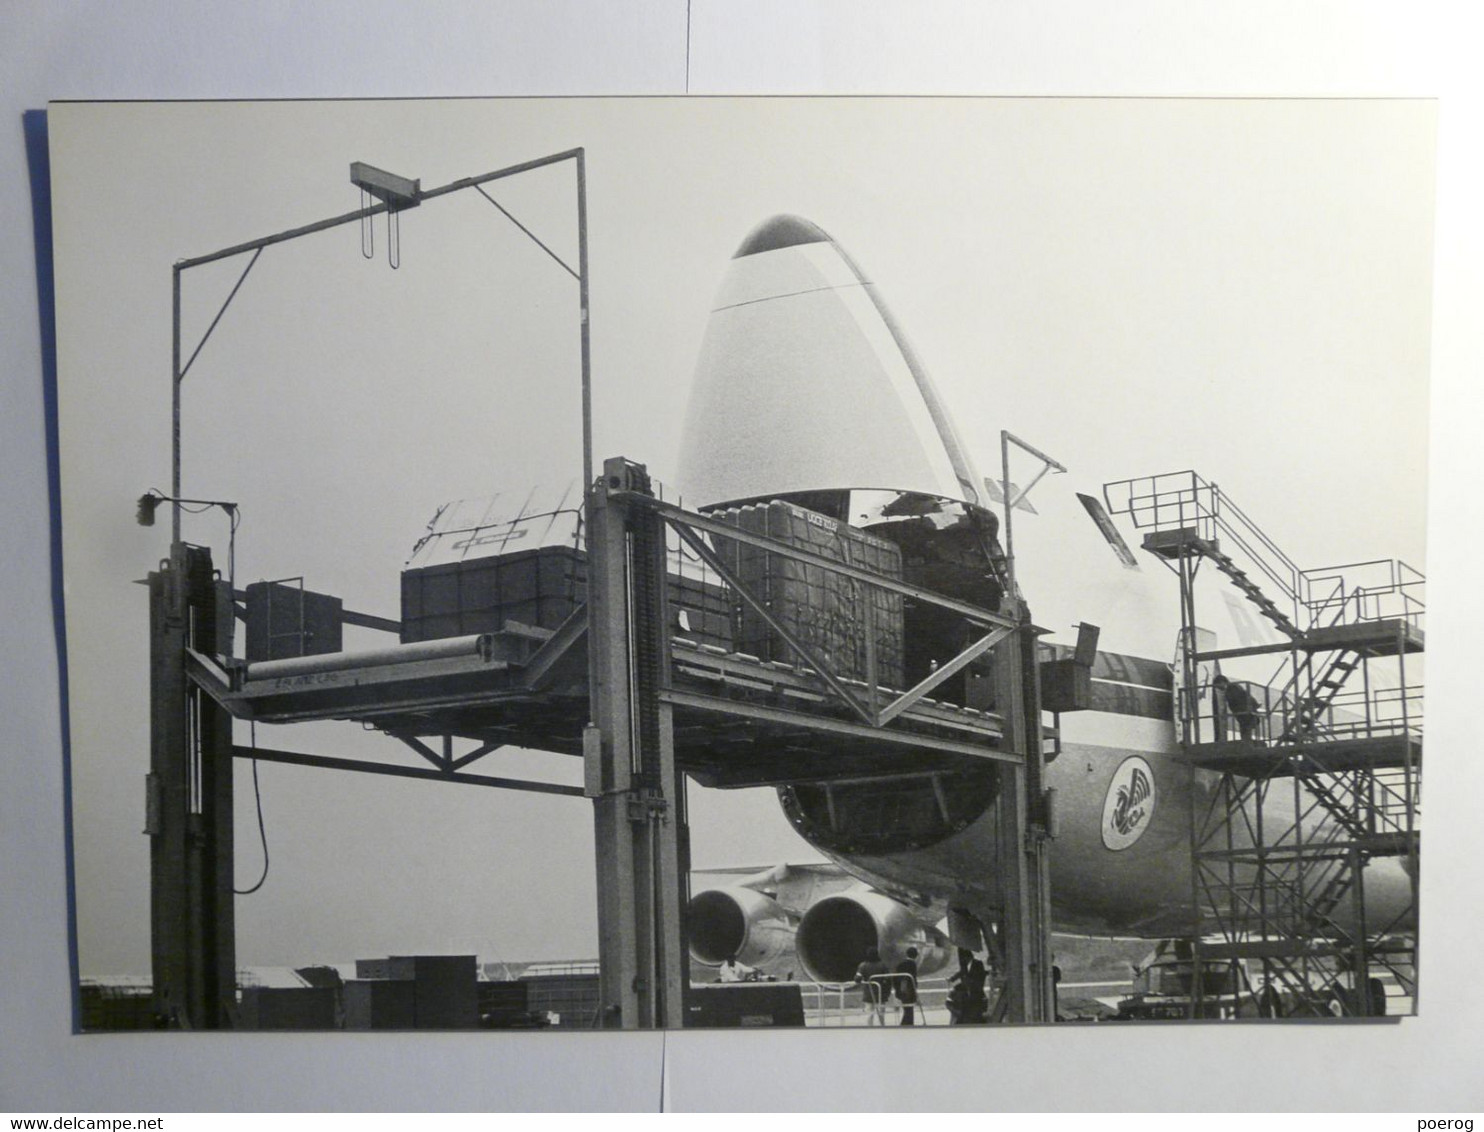 8 PHOTOS AVIONS AIR FRANCE DANS LEUR ENVELOPPE - SERVICE INFORMATION 1974 - CONCORDE BOEING 747 AIRBUS A300 CARAVELLE - Avions